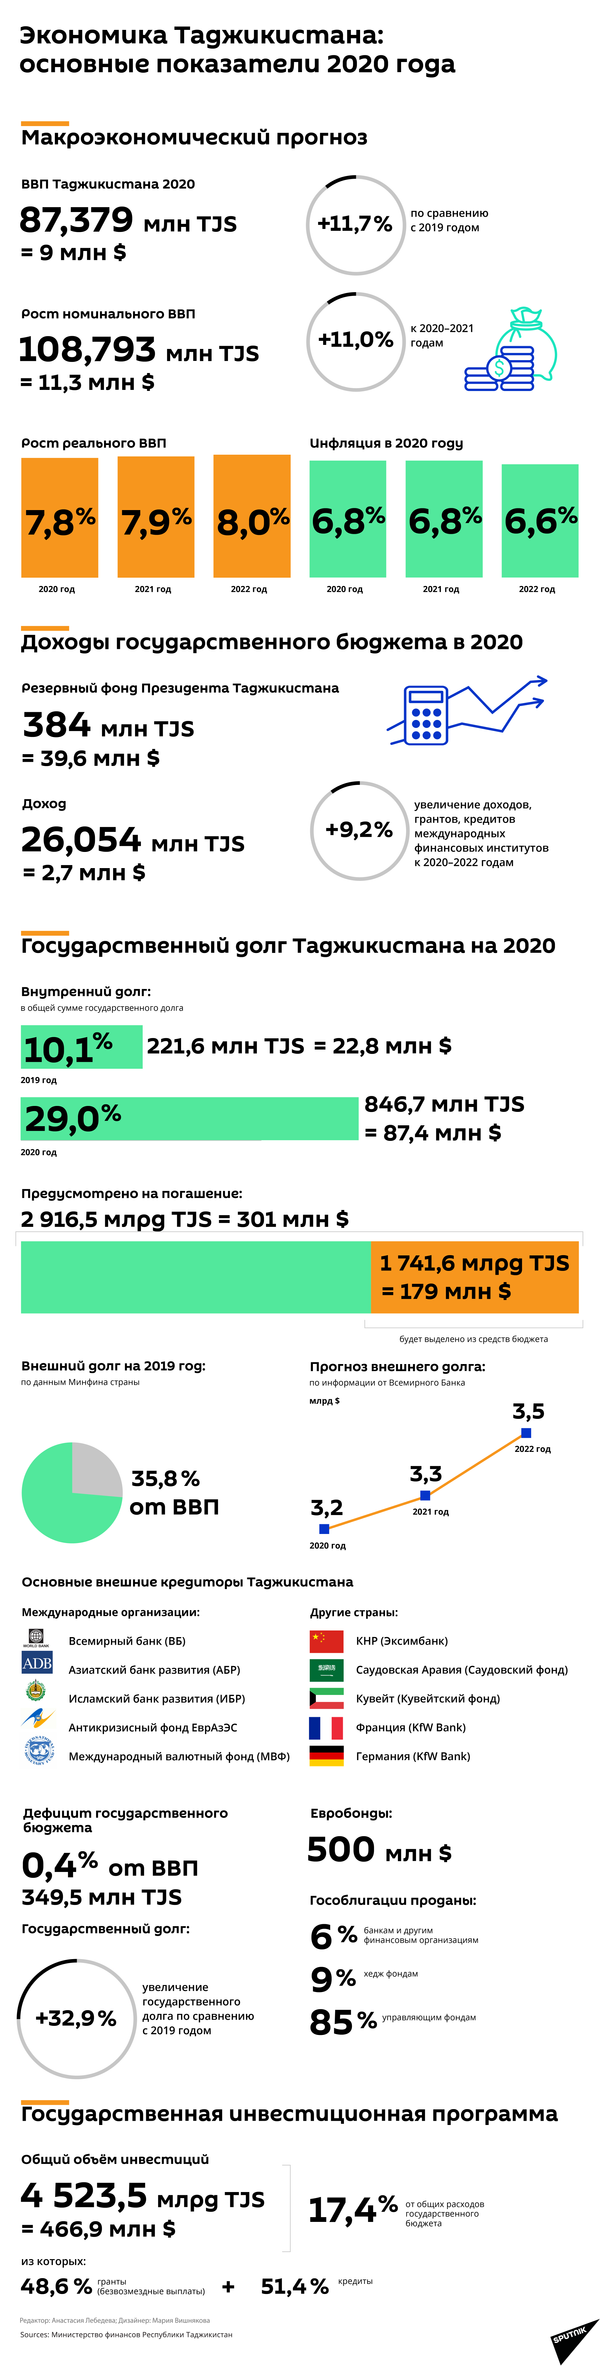 Экономика Таджикистана: основные показатели на 2020 год - Sputnik Таджикистан